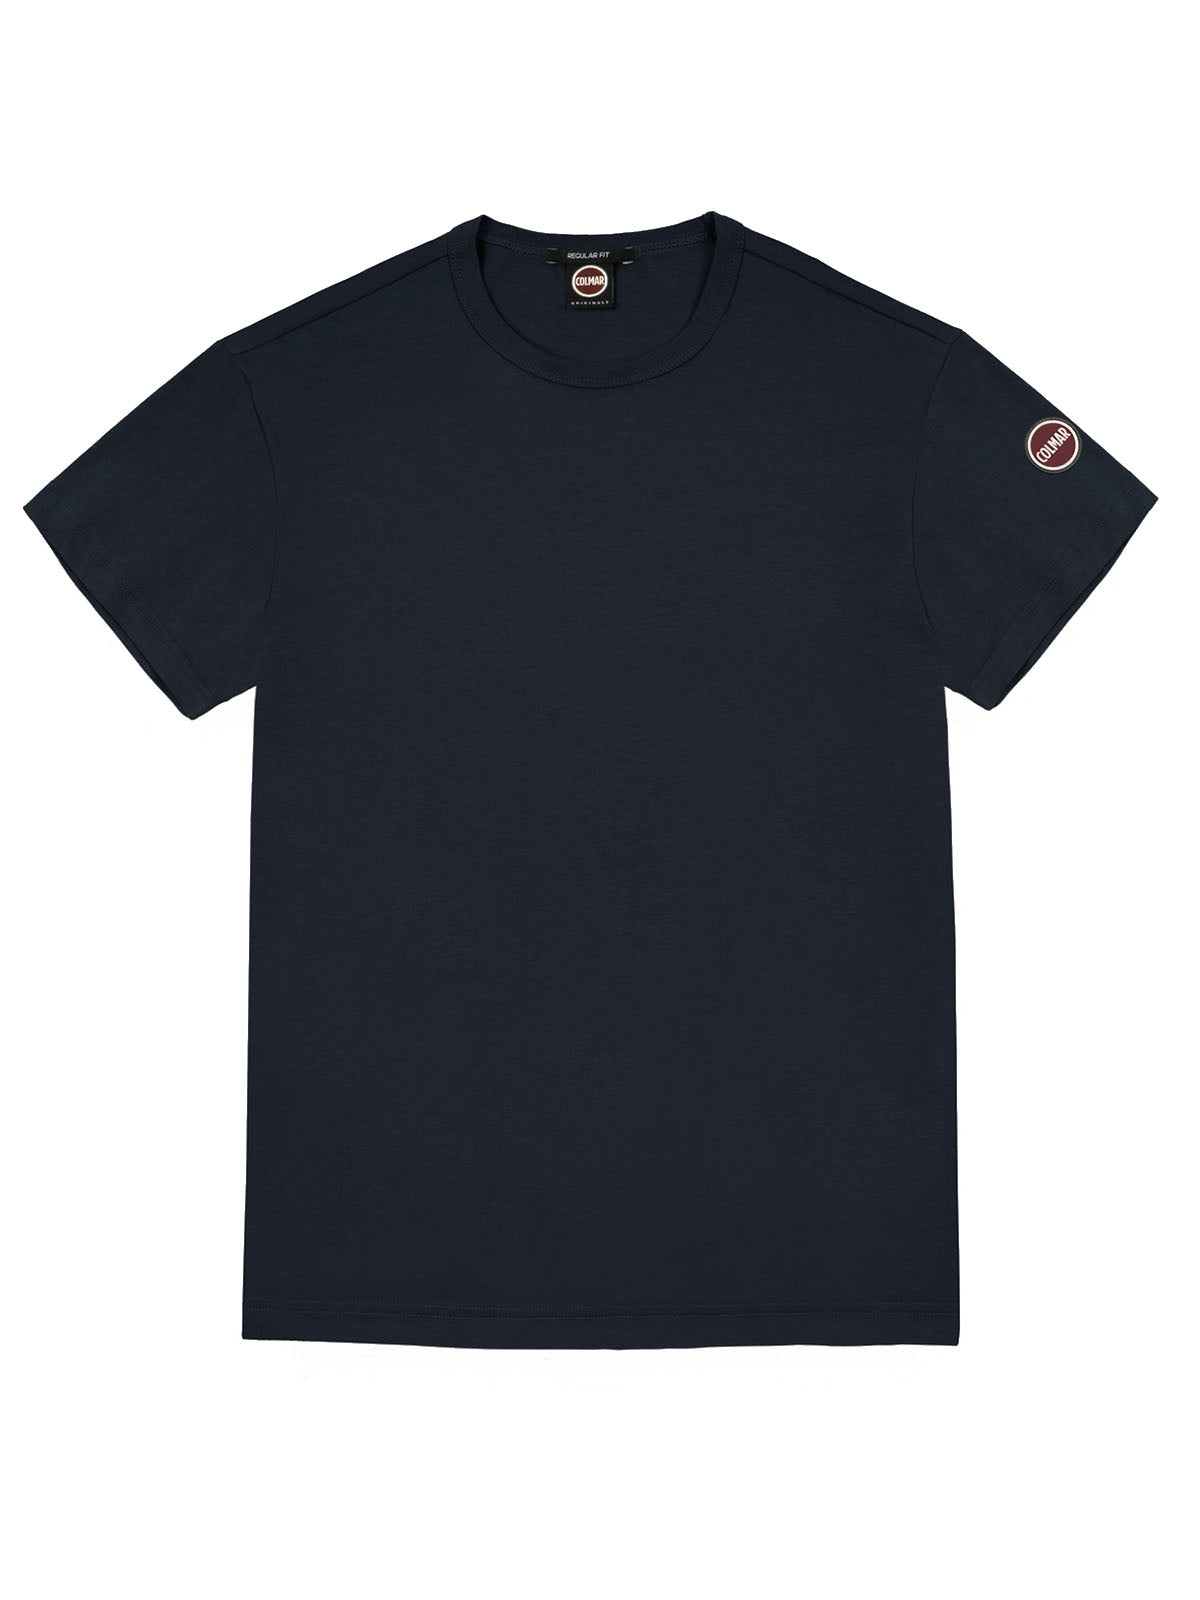 T-shirt Uomo Colmar - T-Shirt A Manica Corta In Jersey Di Cotone - Blu